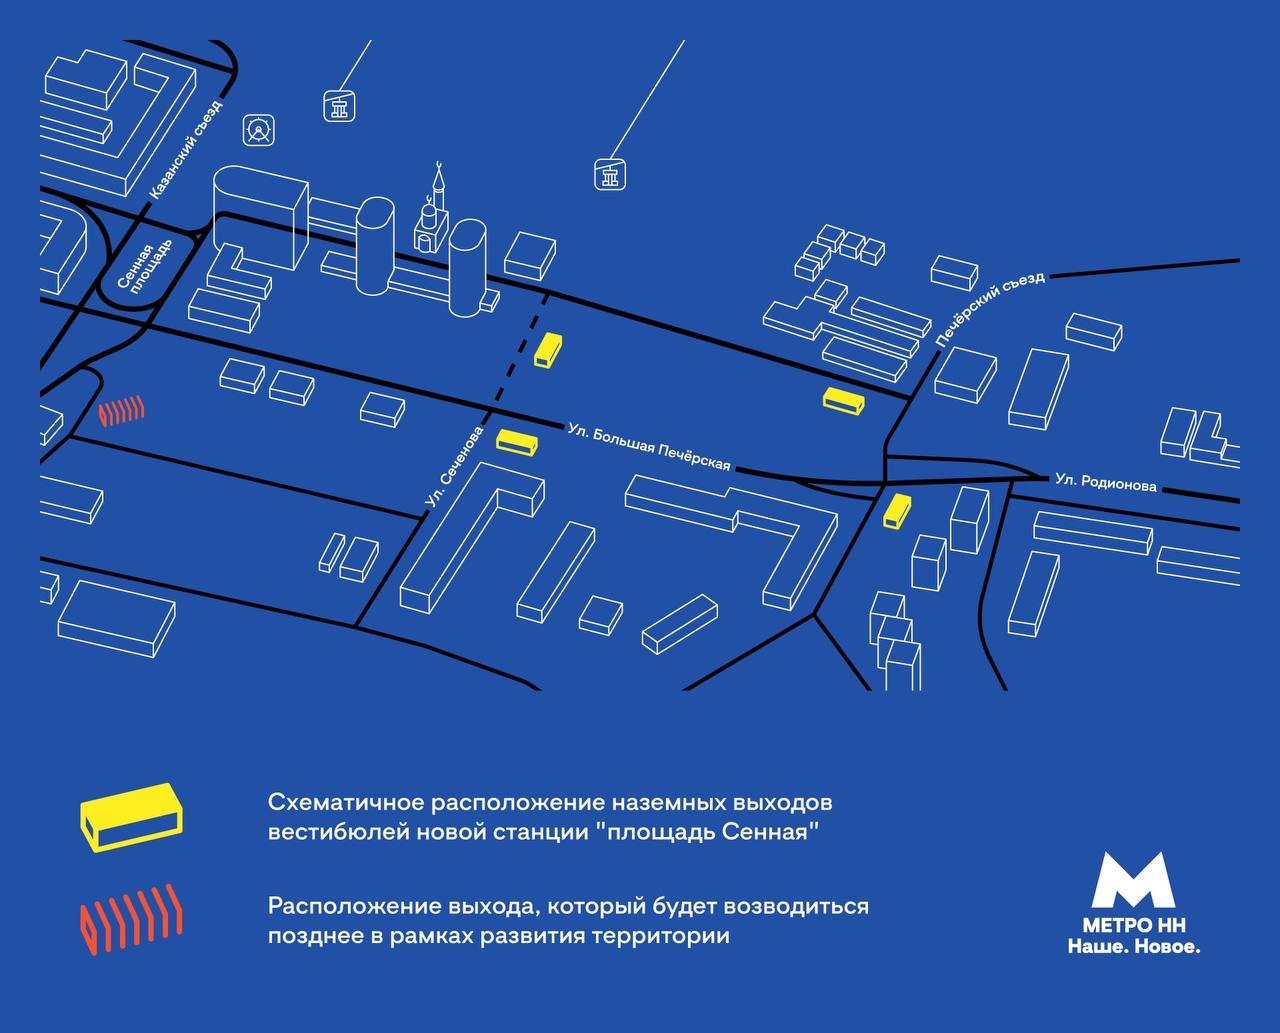 Опубликованы схемы расположения входов в новые станции метро Нижнего Новгорода - фото 1